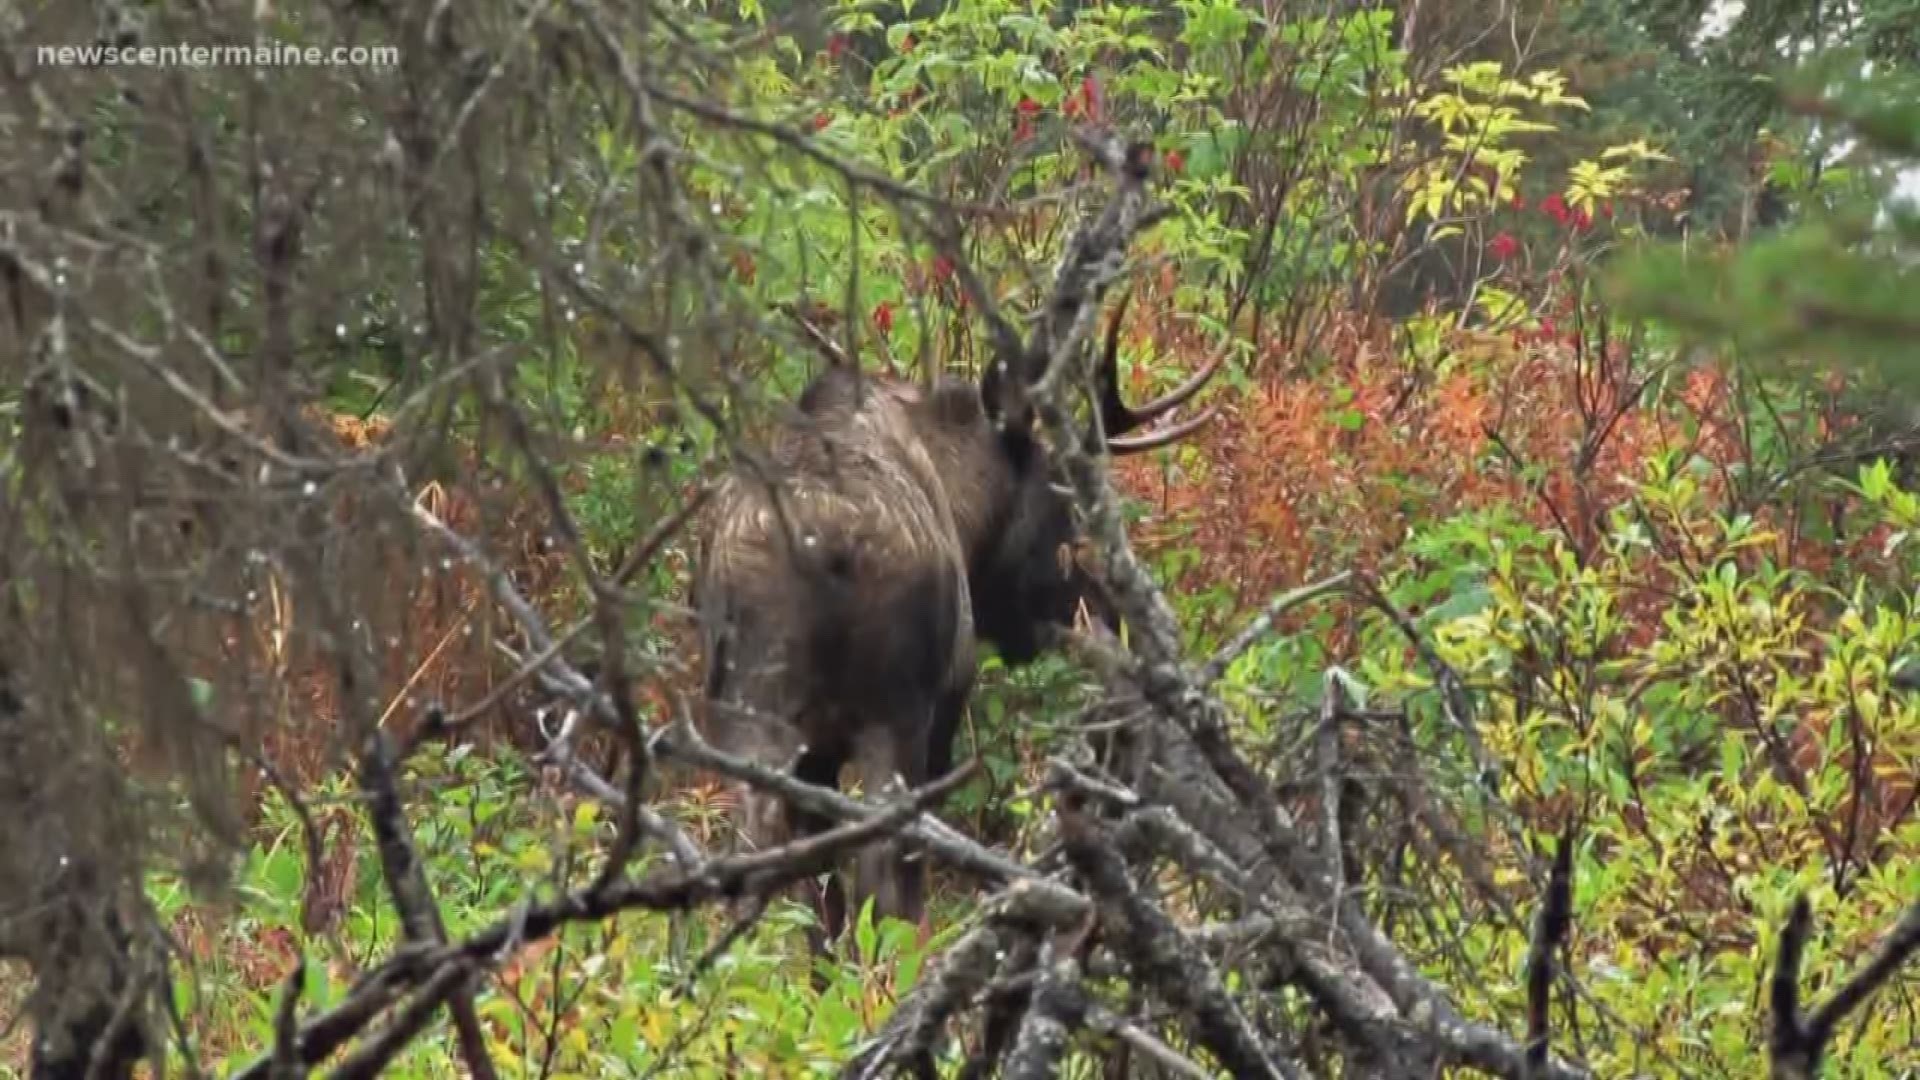 Moose hunting season begins